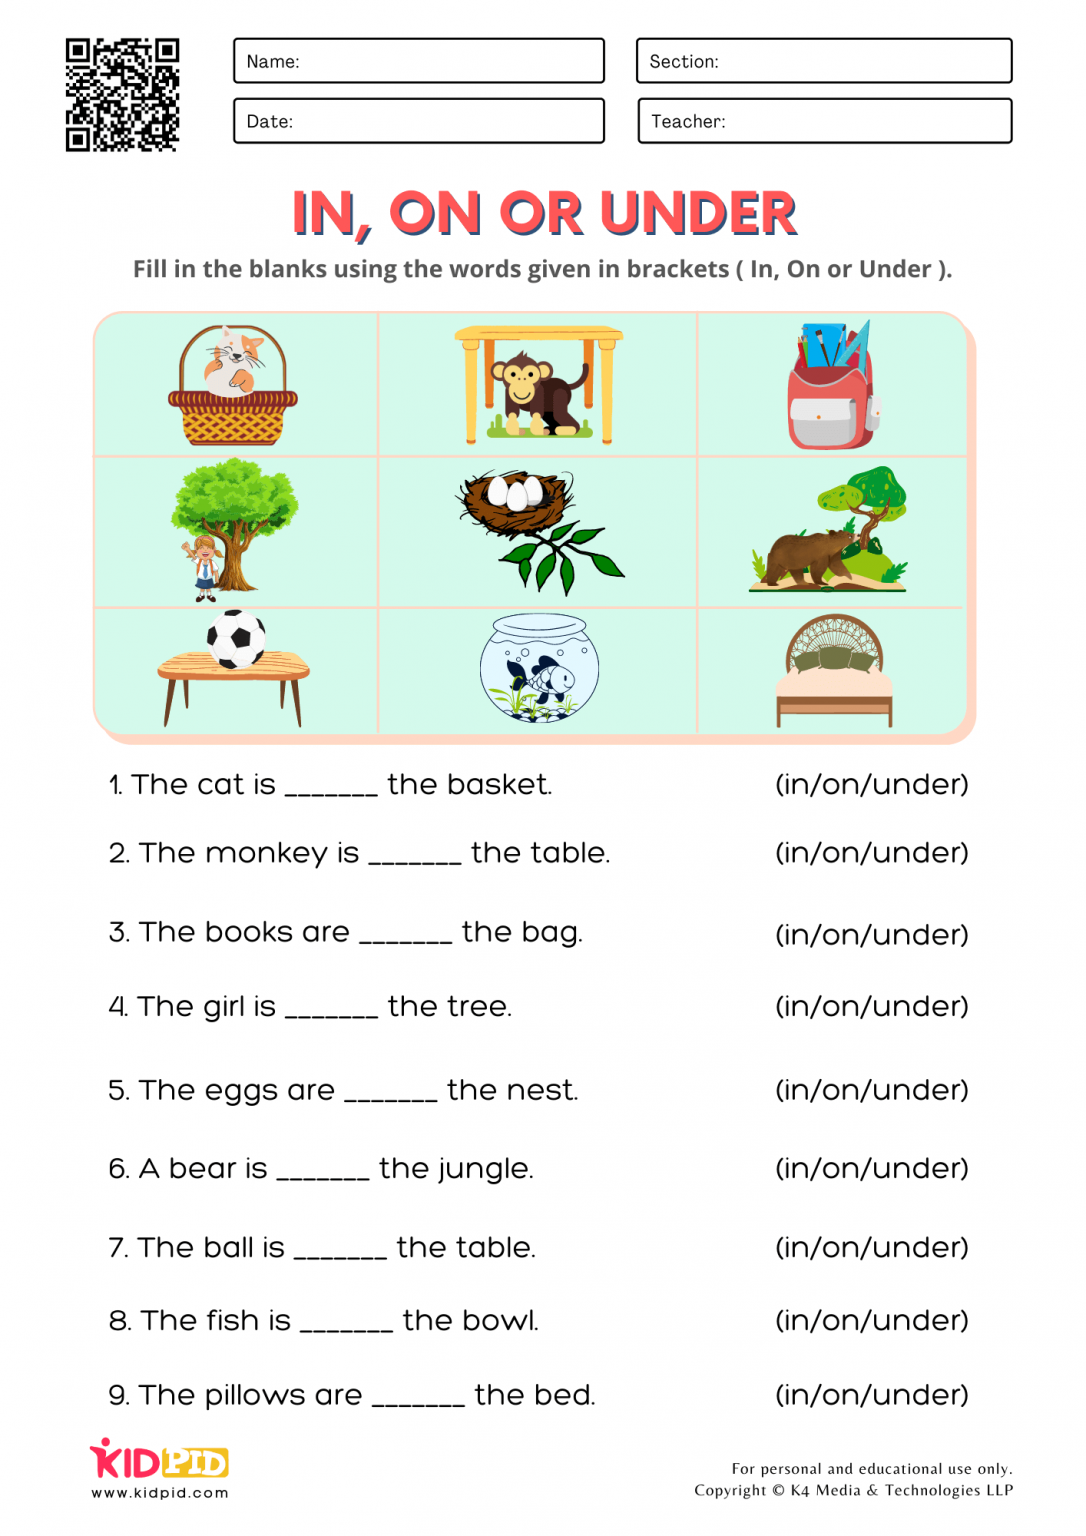 Worksheet For Prepositional Phrases